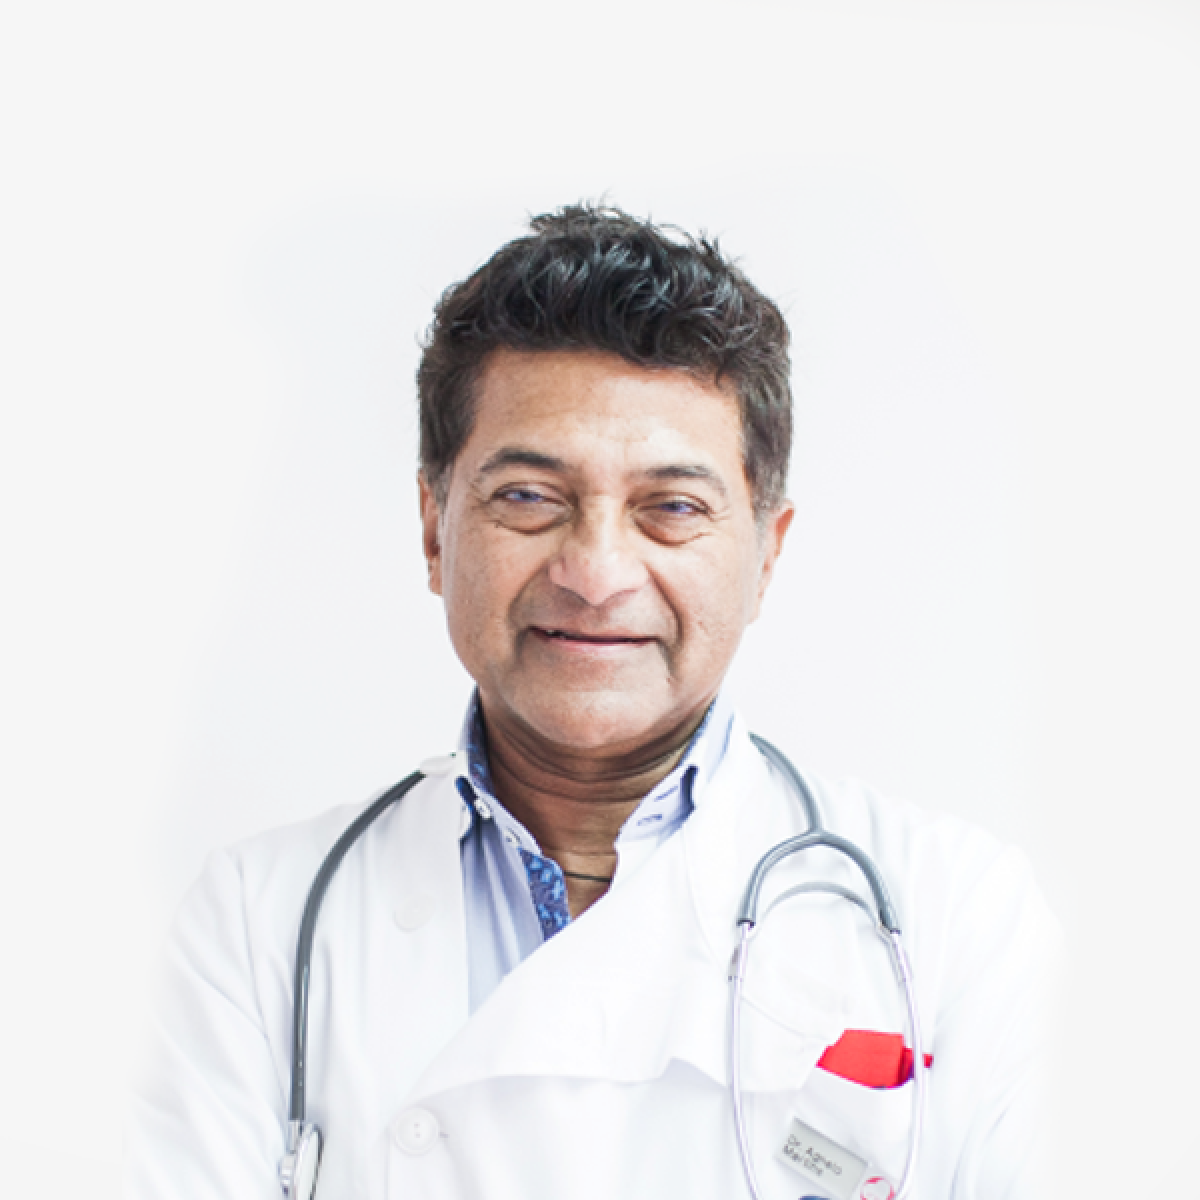 Dr. Agnelo Martins